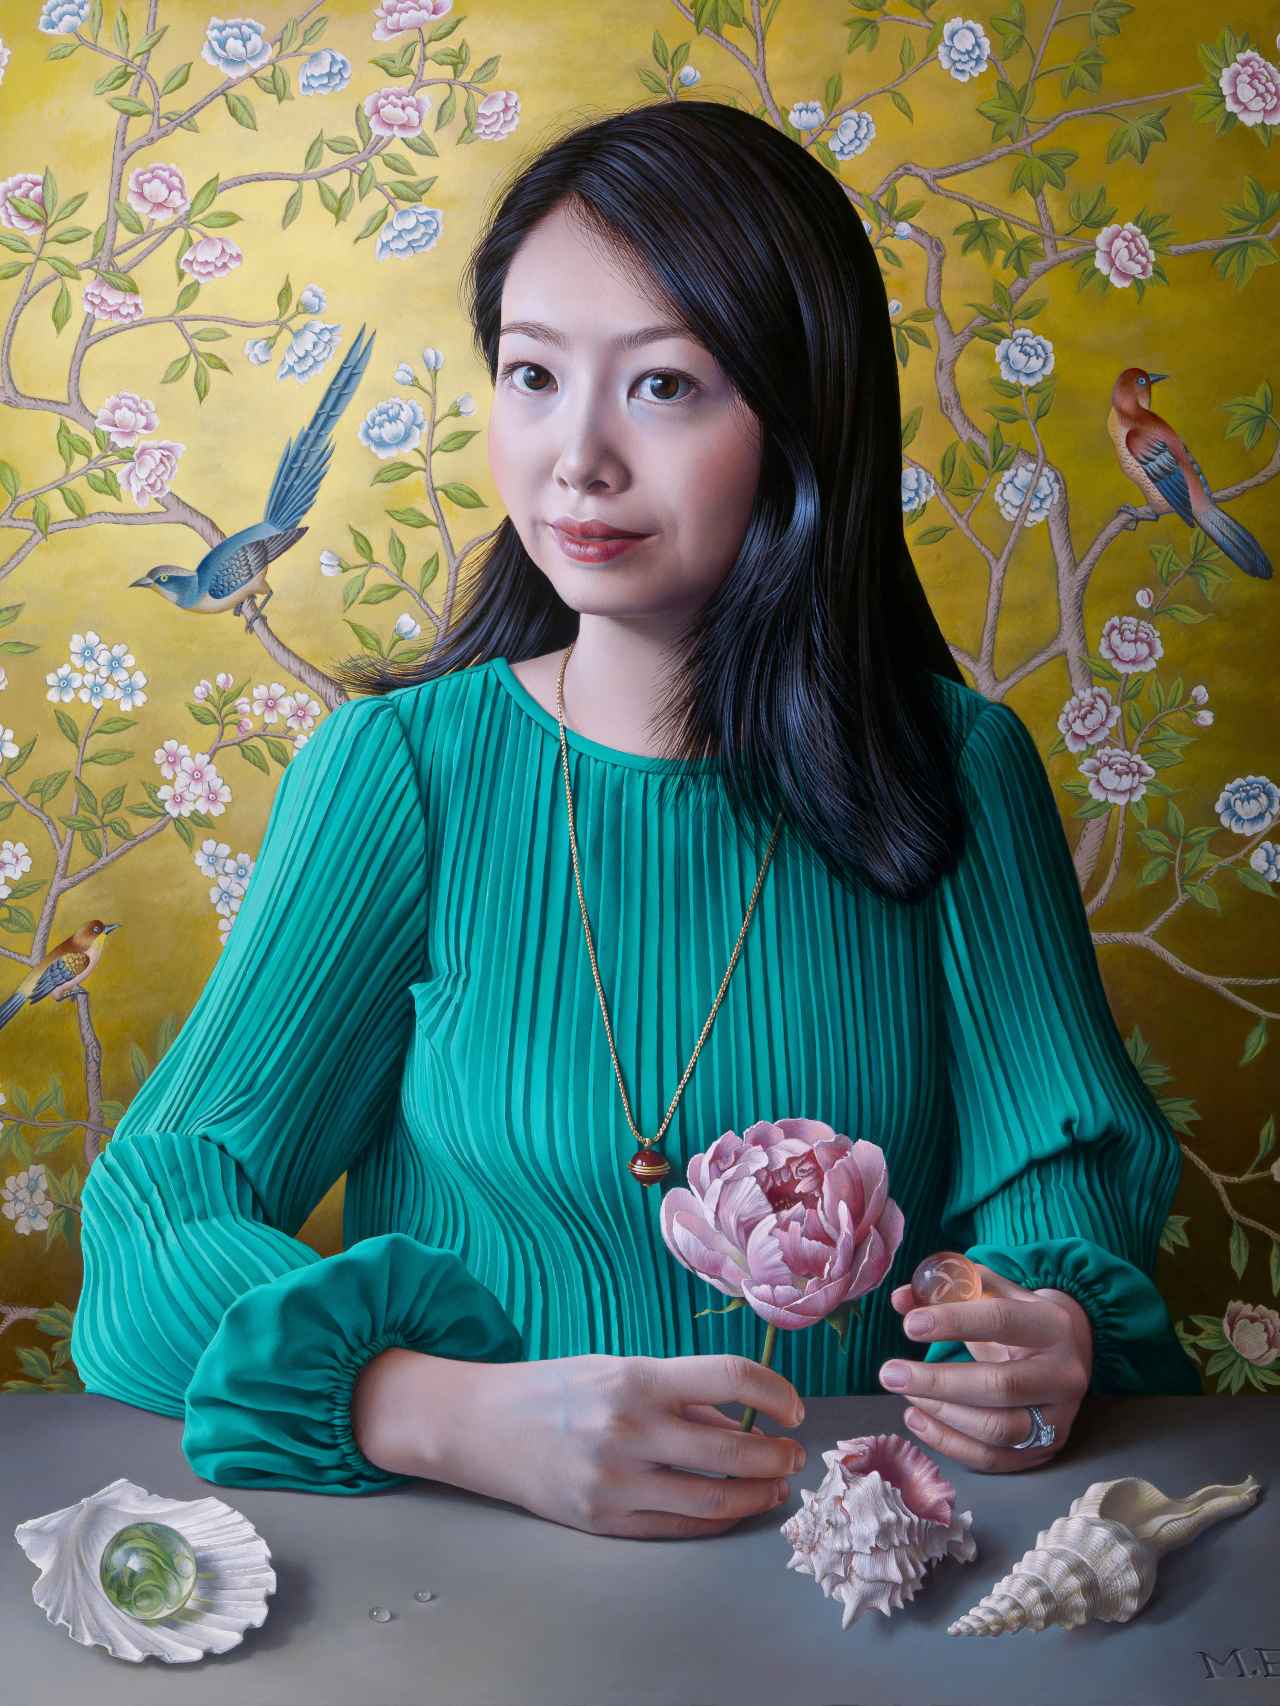 Retrato titulado 'Portrait with Chinoiserie Wallpaper'.